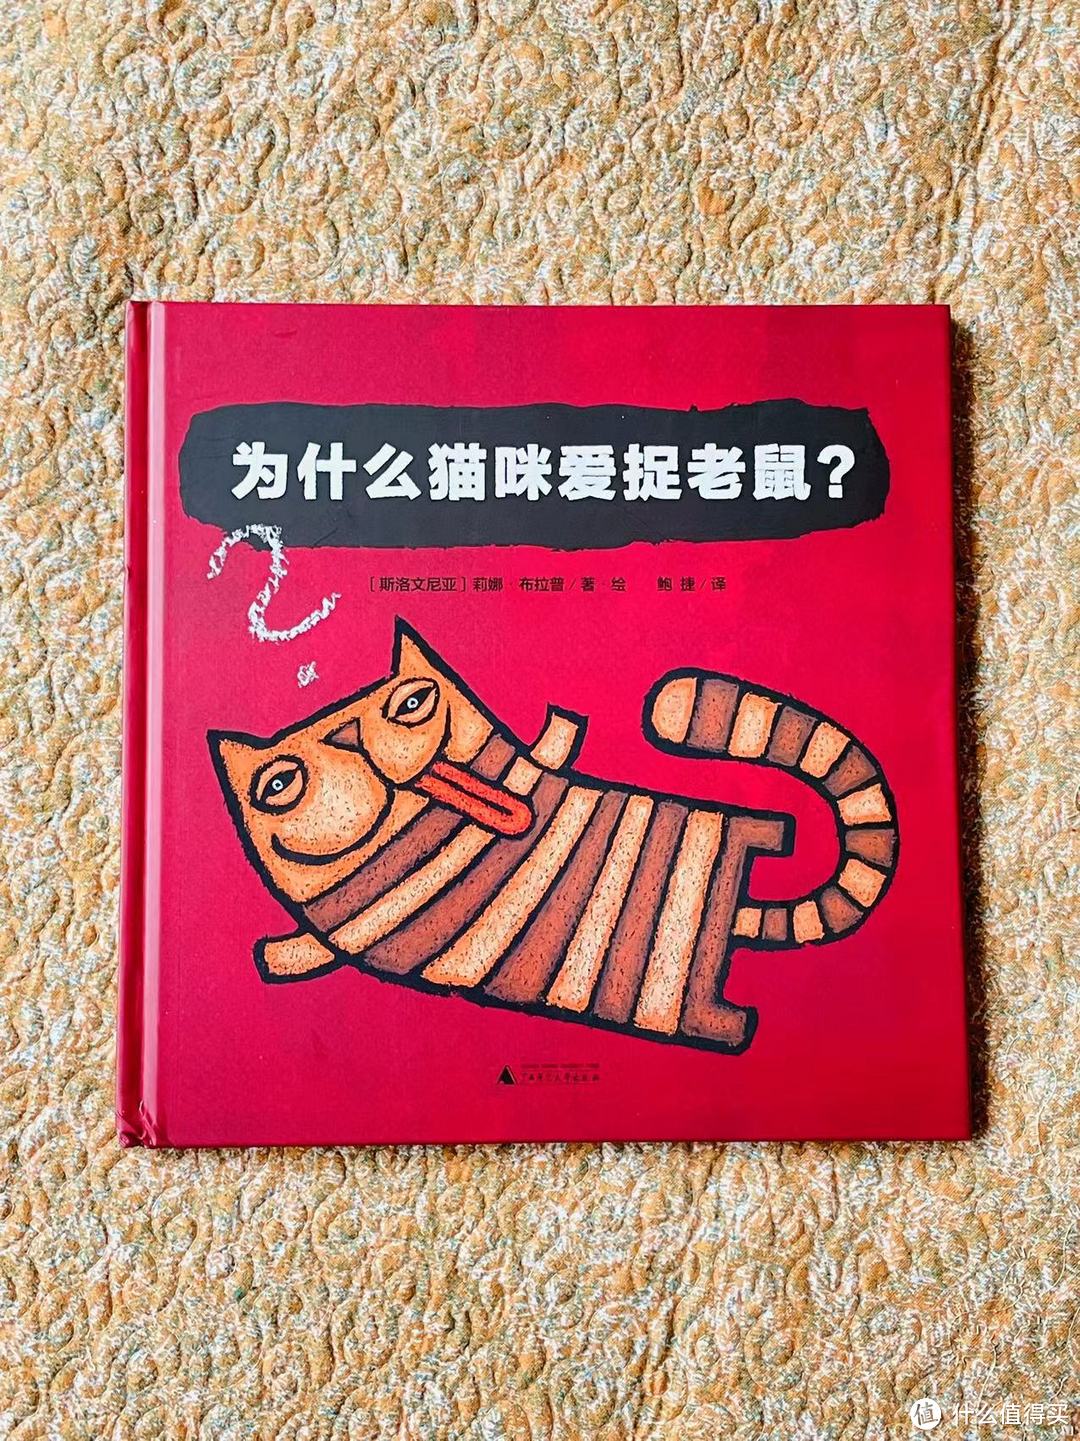 谁能拒绝一只可爱的猫咪呢？何况是一本猫咪全书